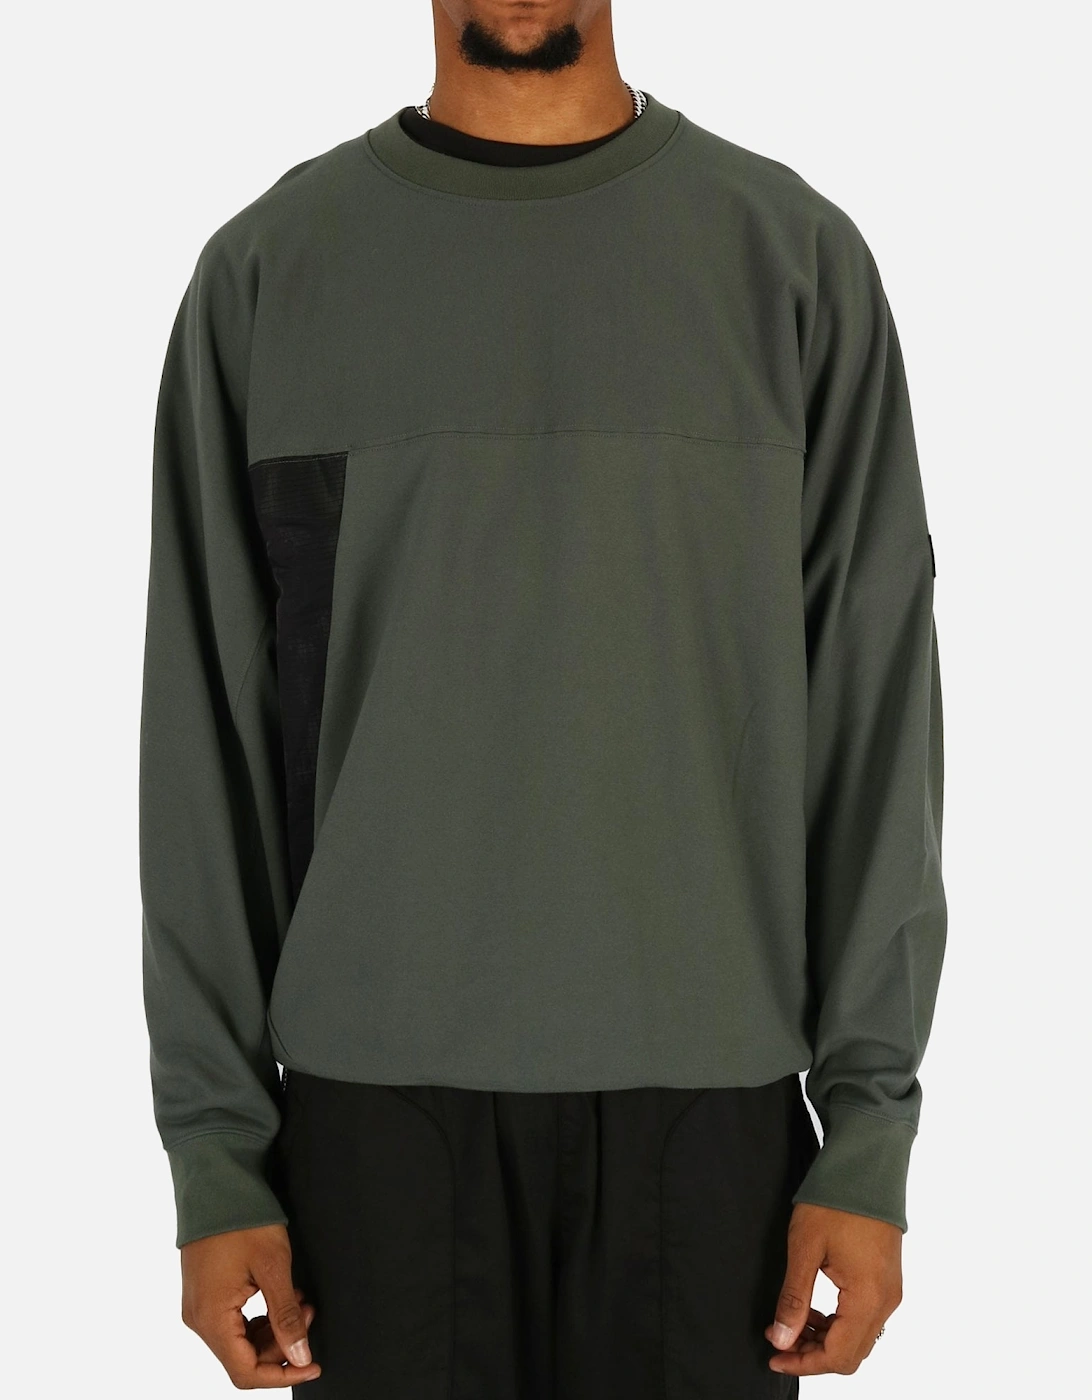 Ripstop Trim Green Sweatshirt, 5 of 4